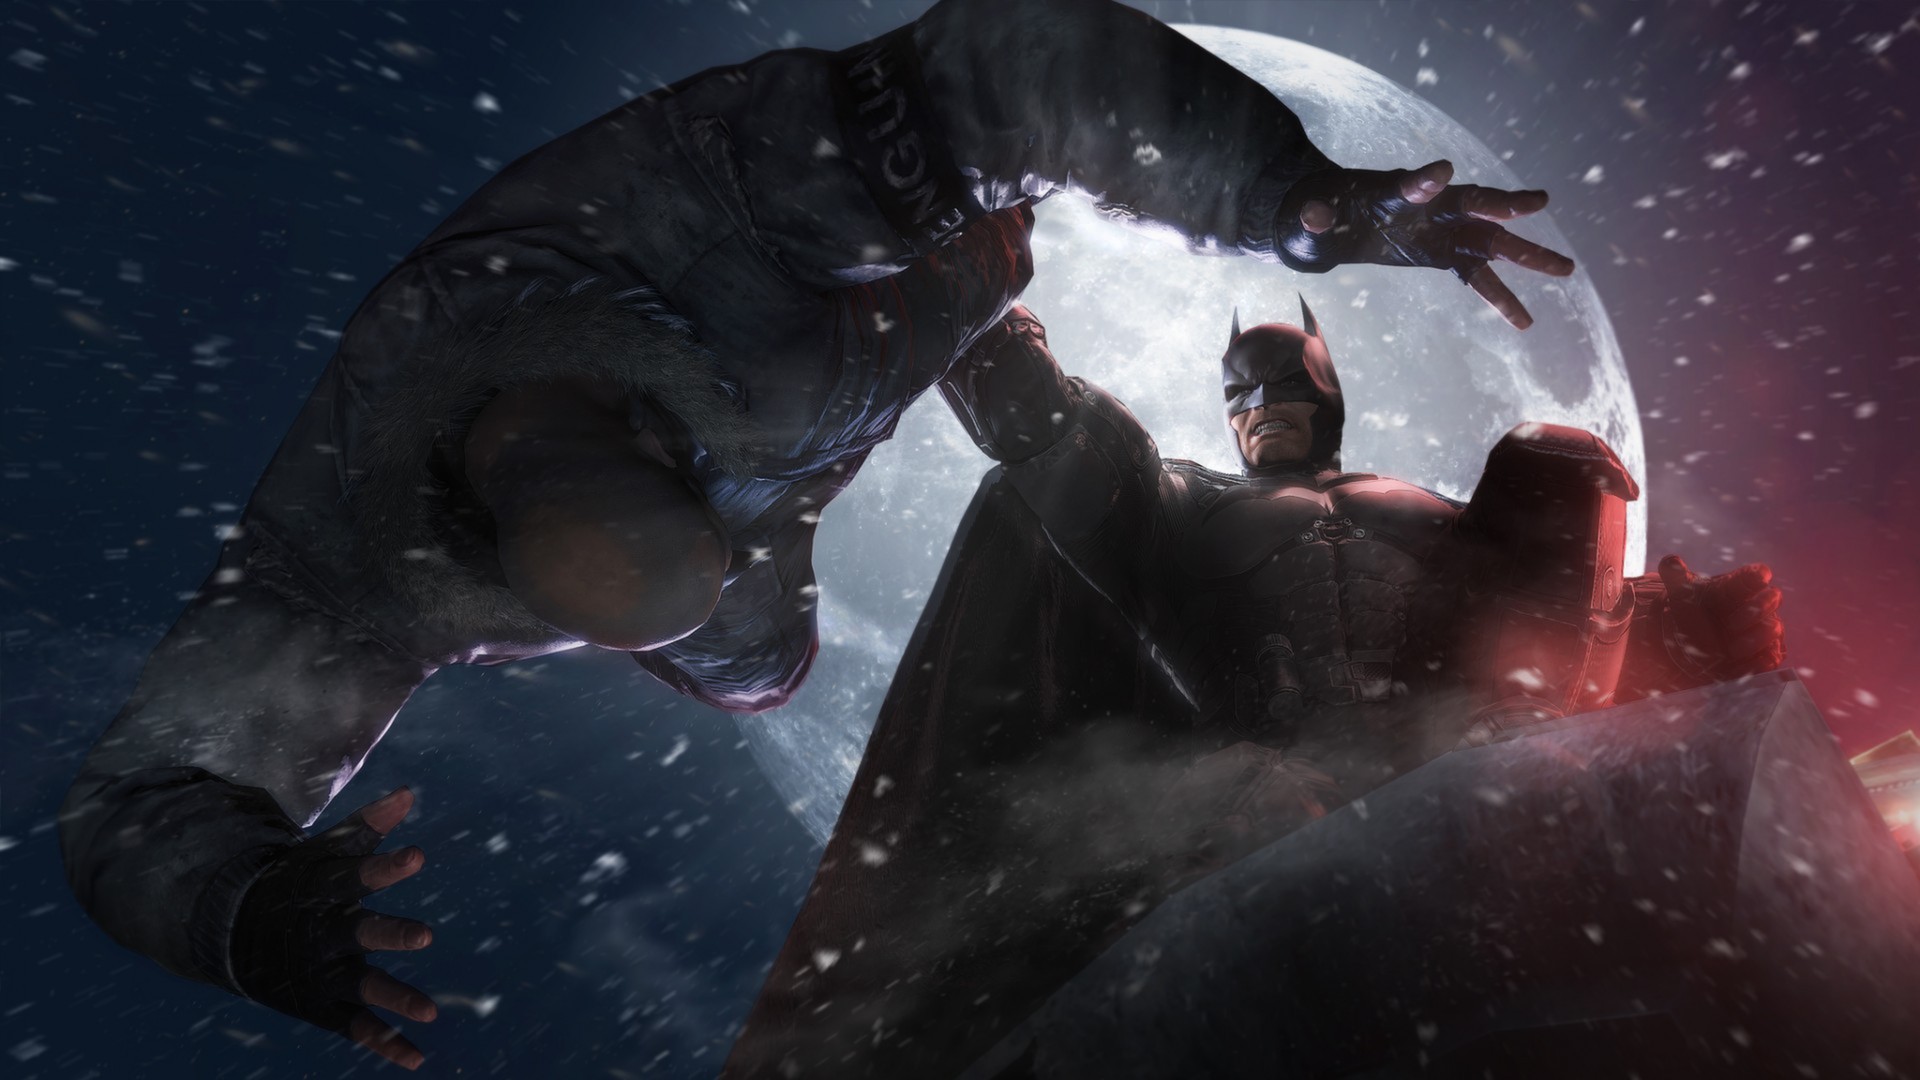 Jogando: Batman: Arkham Origins – Wii U e Steam